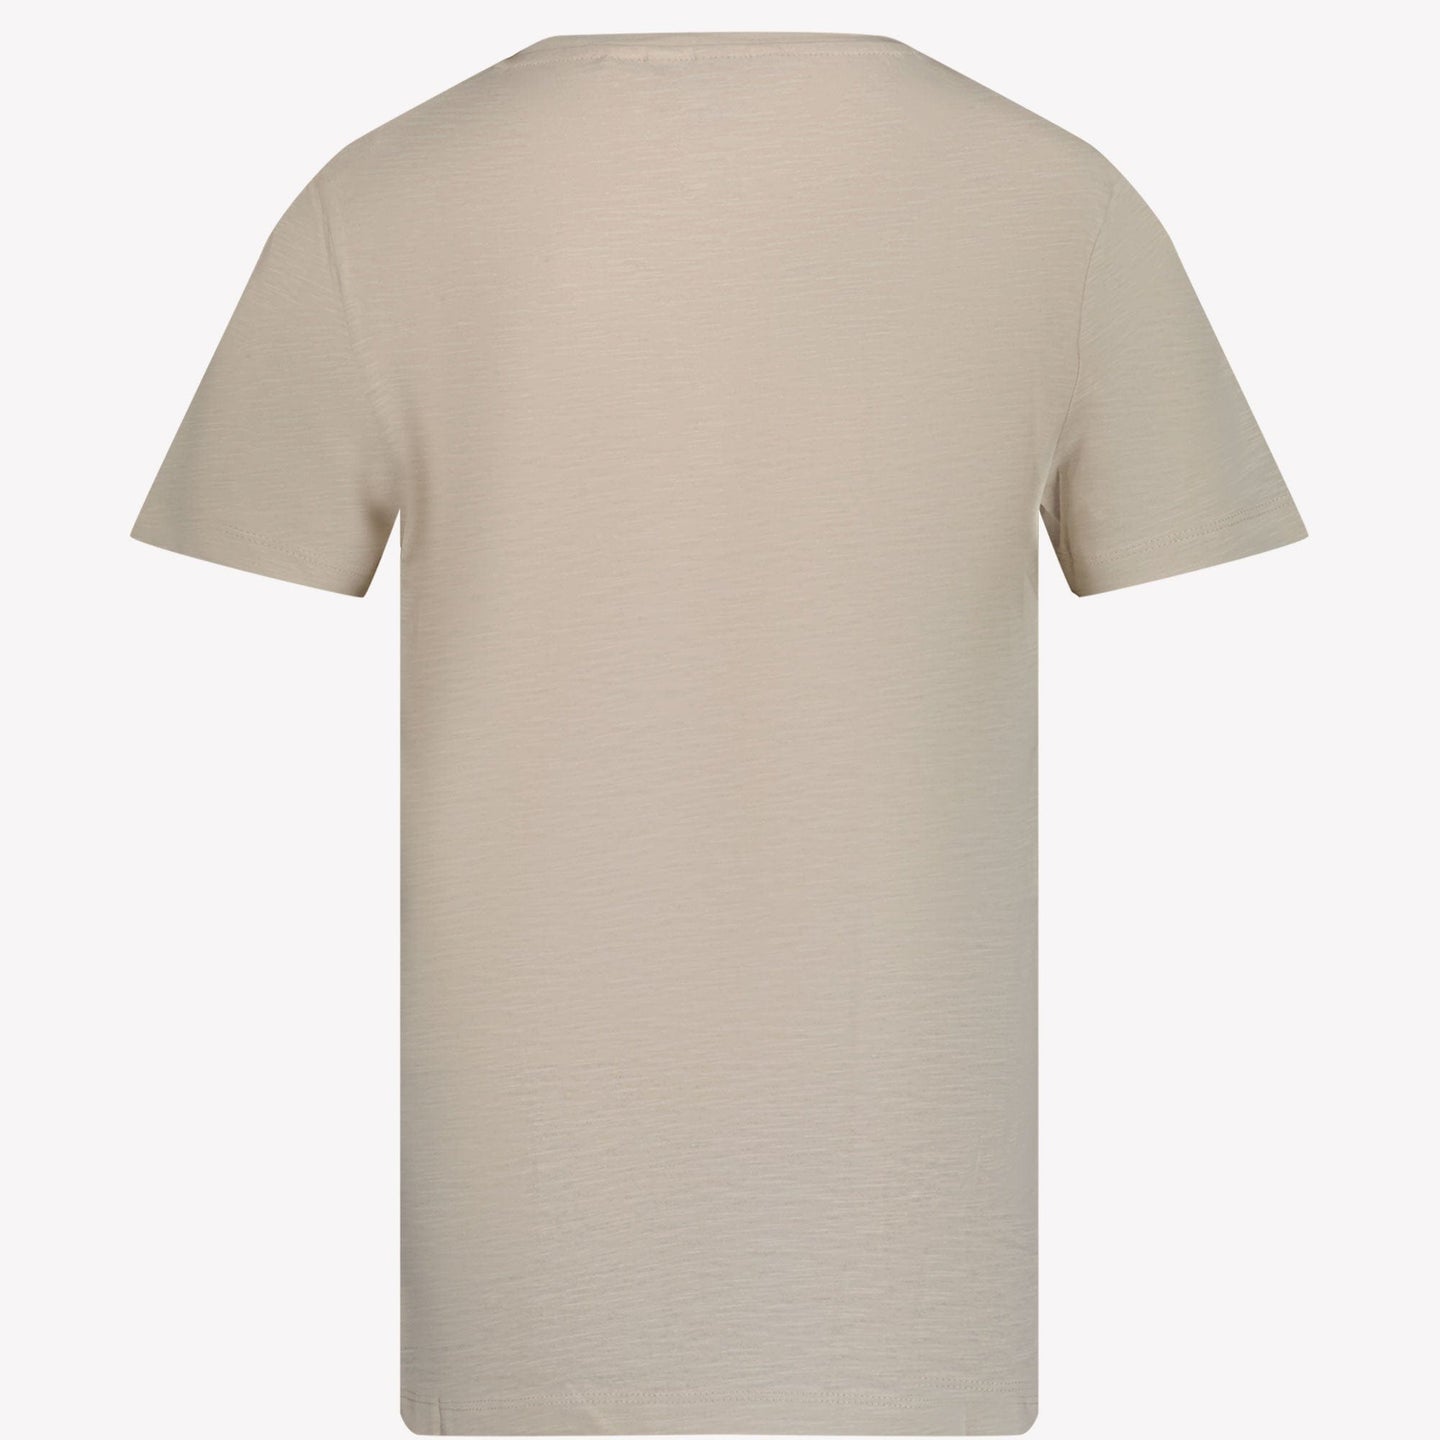 Antony Morato Kinder Jongens T-shirt Zand 4Y